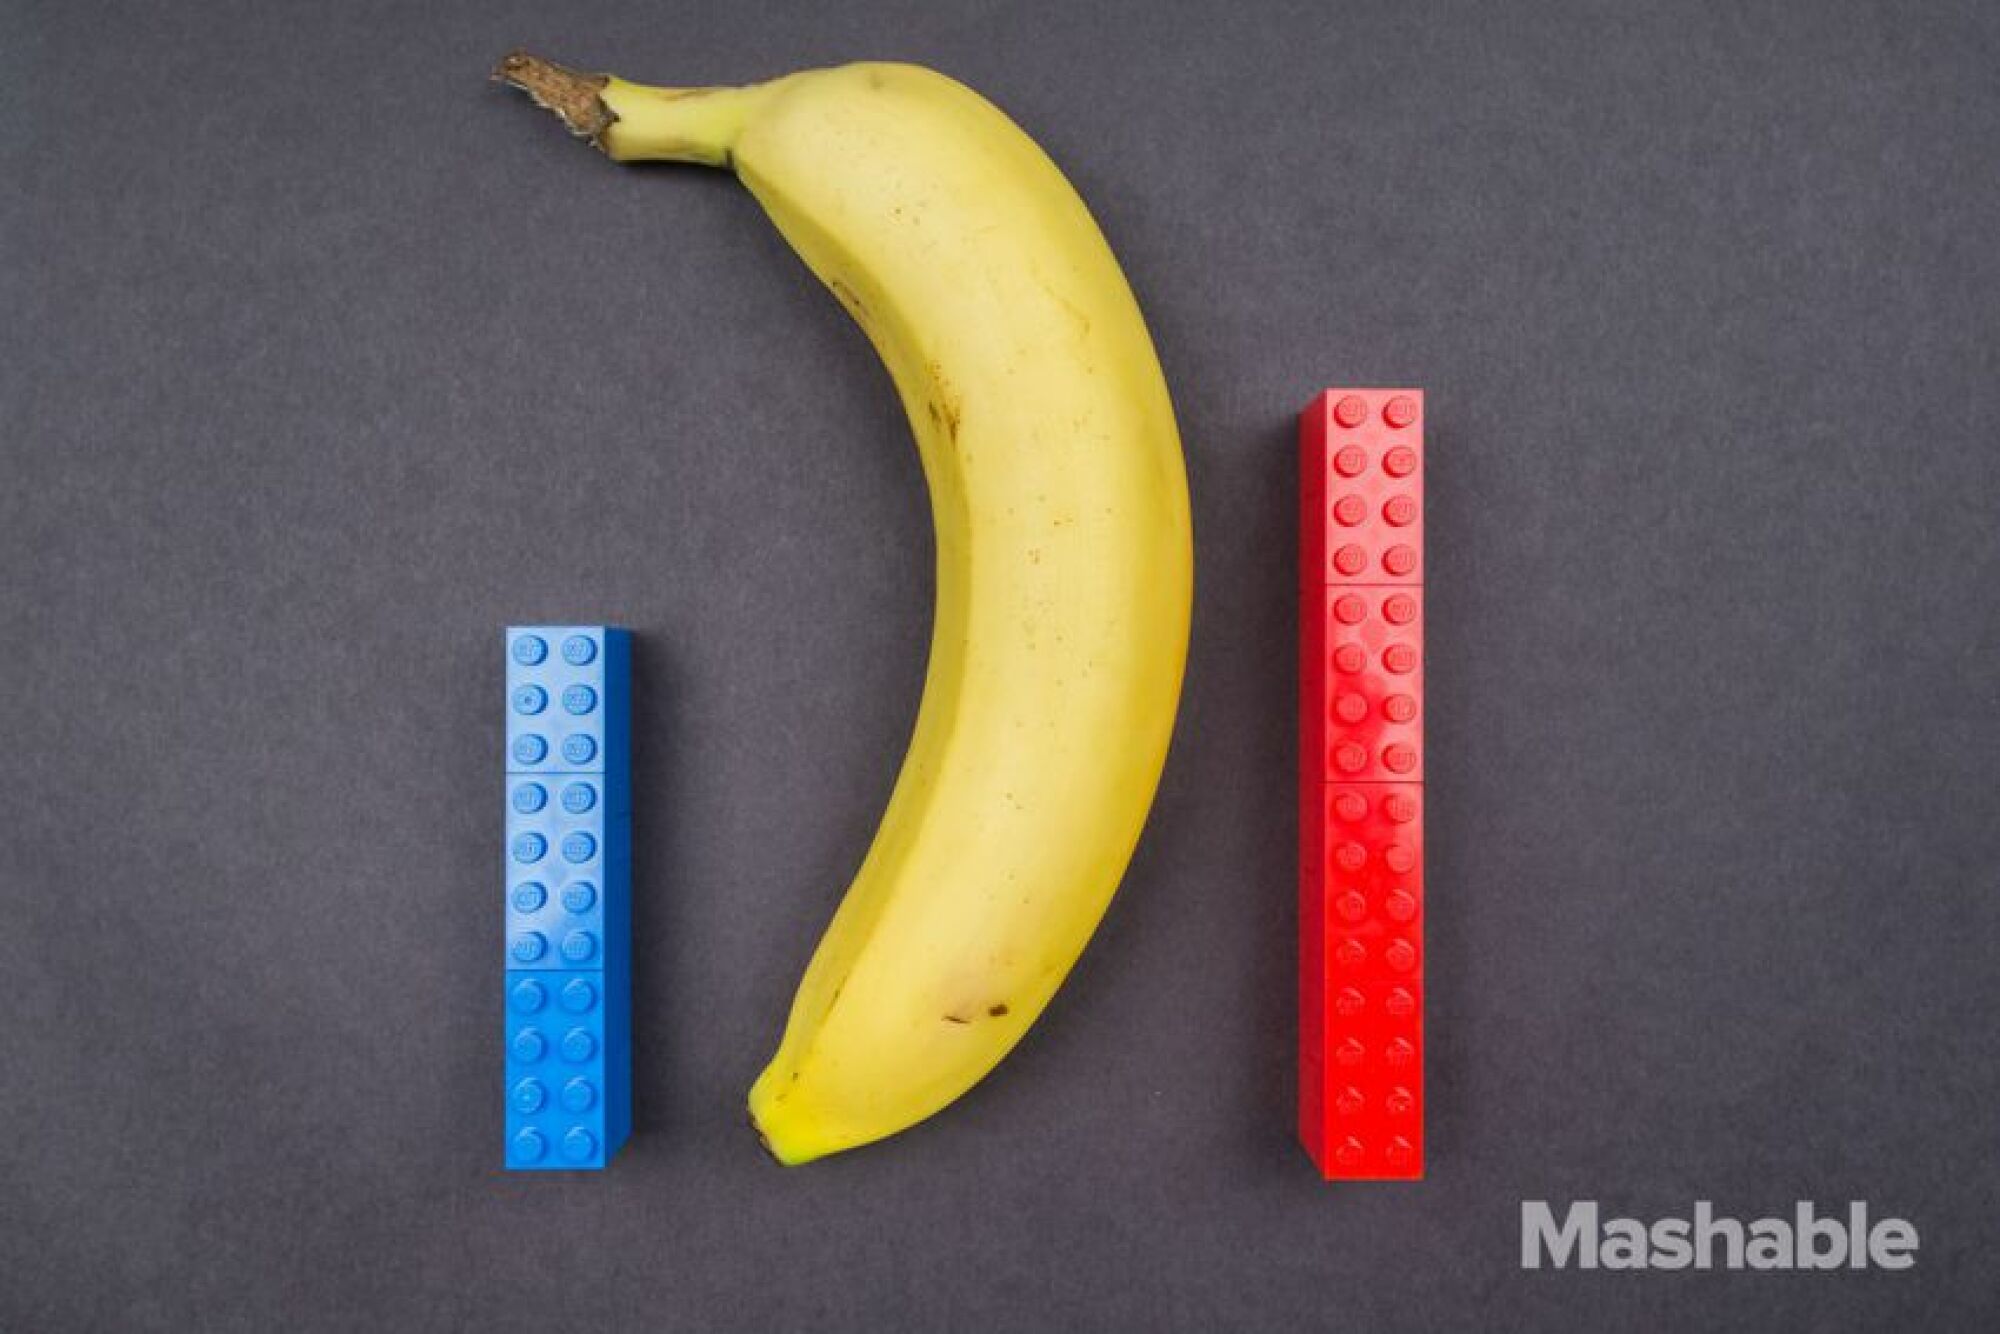 Les constructions Lego rouges et bleues à côté d'une banane.  Le lego bleu mesure environ la moitié de la longueur de la banane, tandis que le Lego rouge mesure environ les deux tiers de la longueur.